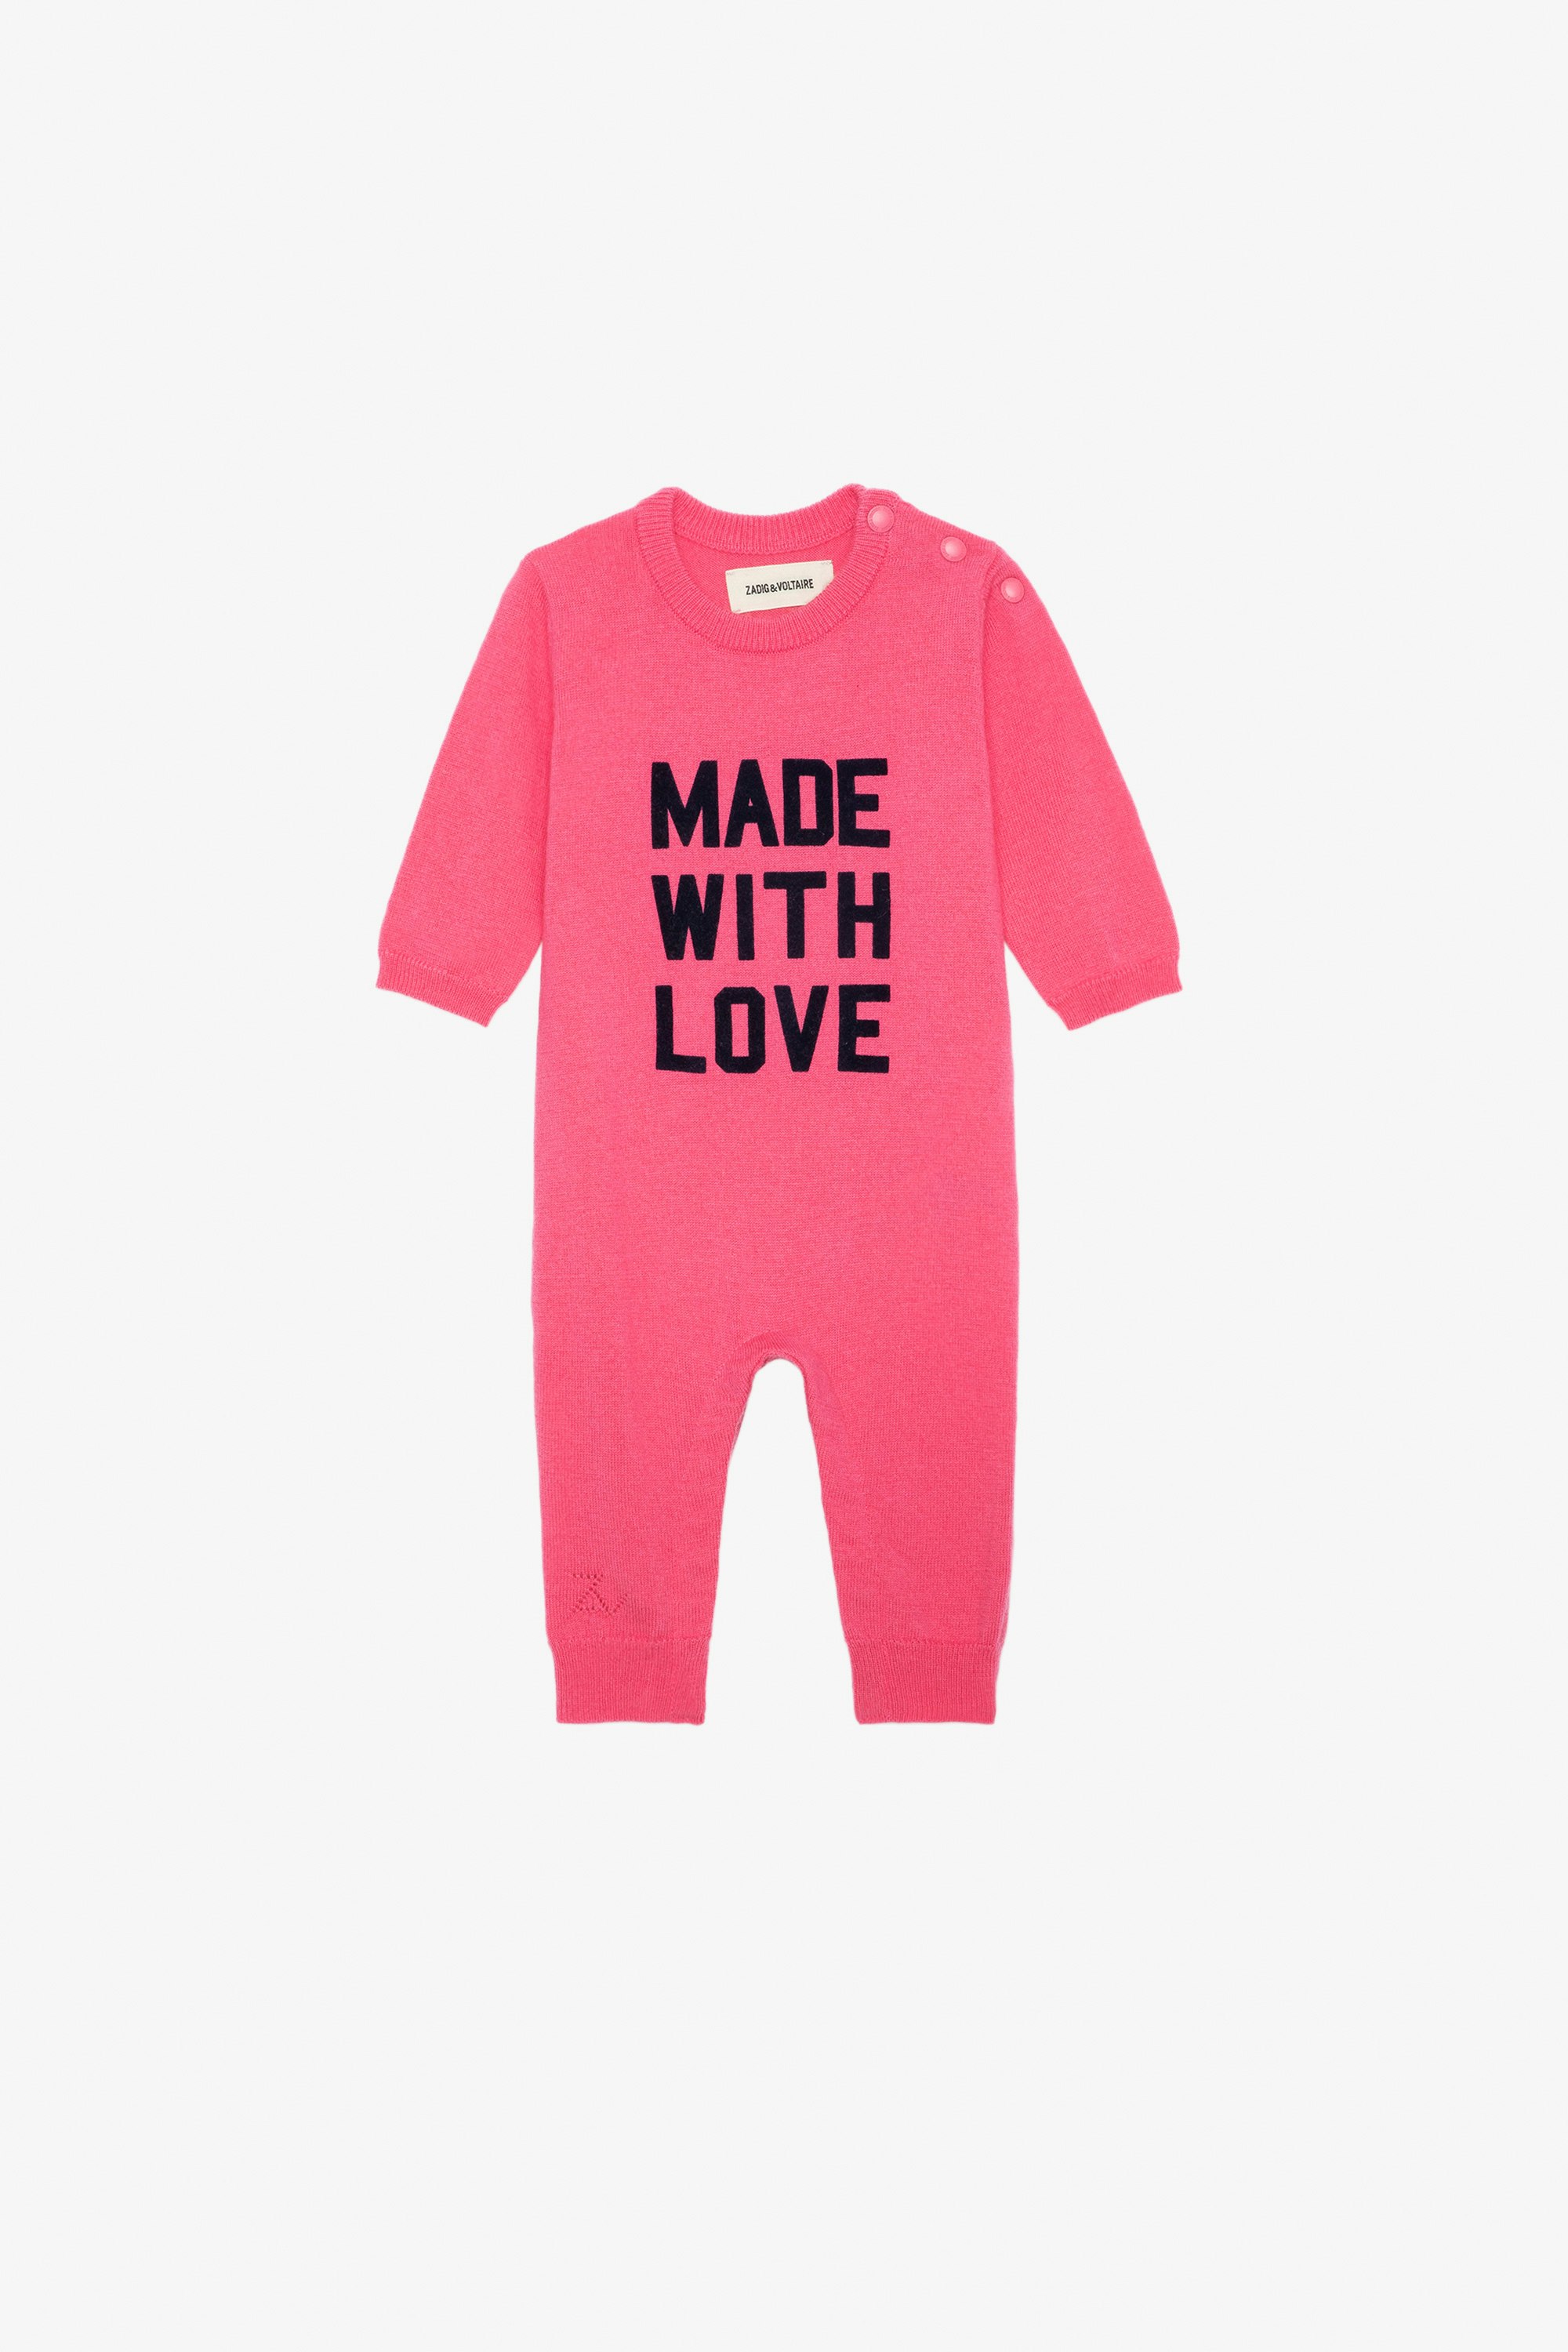 Combinaison Didou Bébé Combinaison en maille tricot rose à message "Made With Love" bébé.